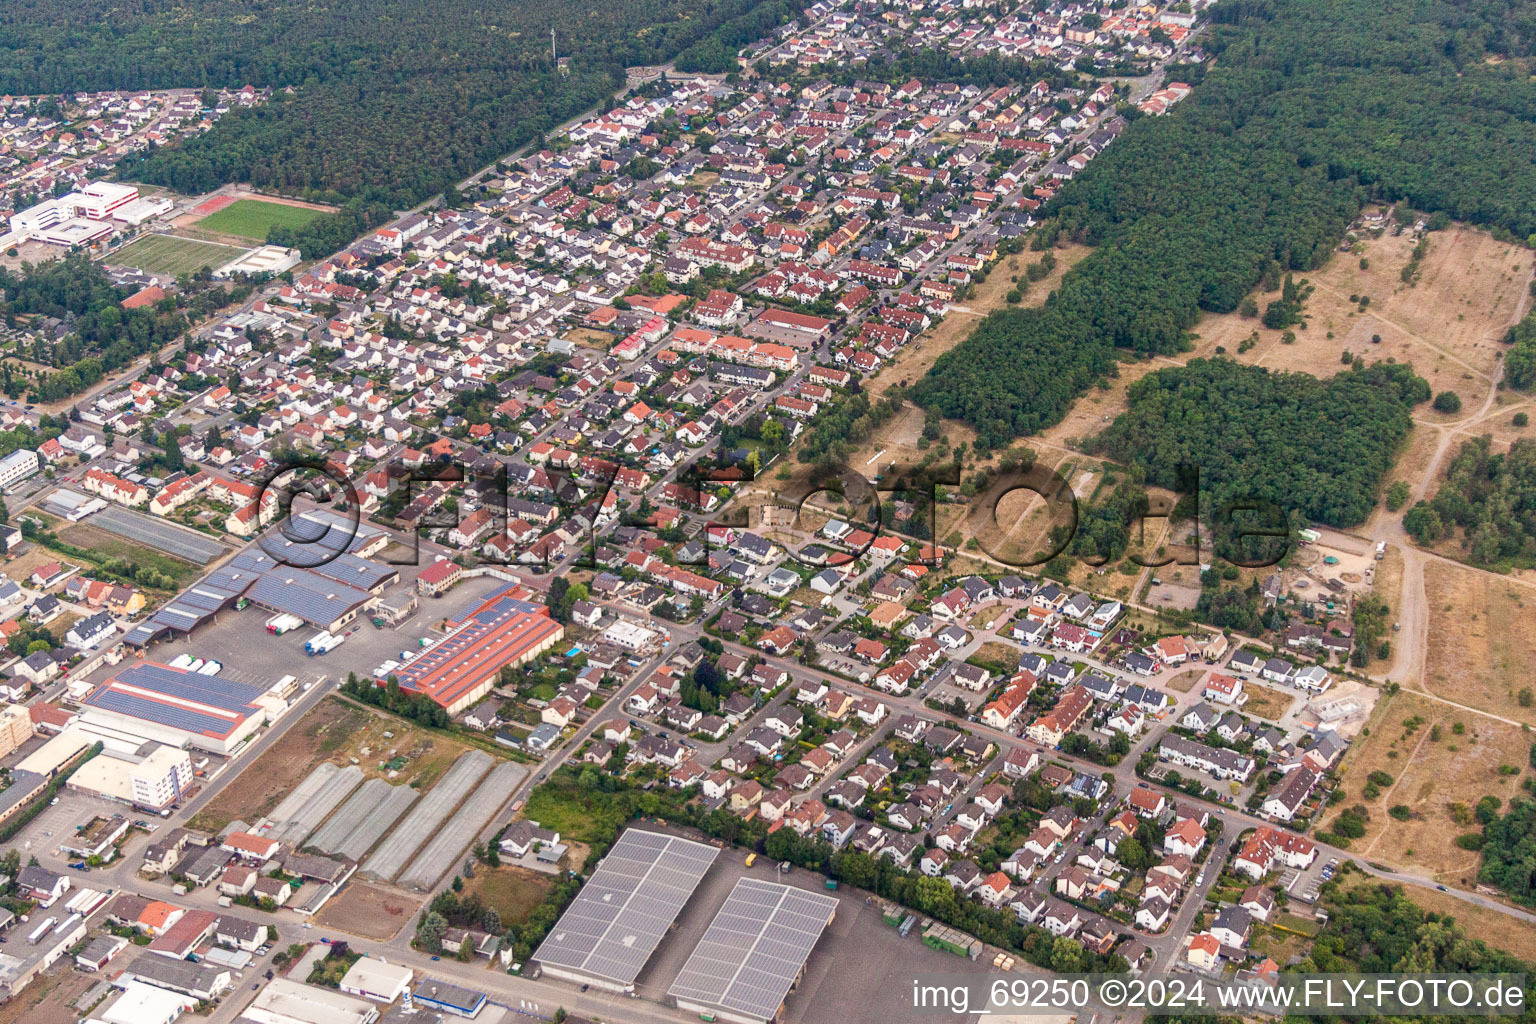 Vue aérienne de Zone urbaine avec périphérie et centre-ville à Maxdorf dans le département Rhénanie-Palatinat, Allemagne